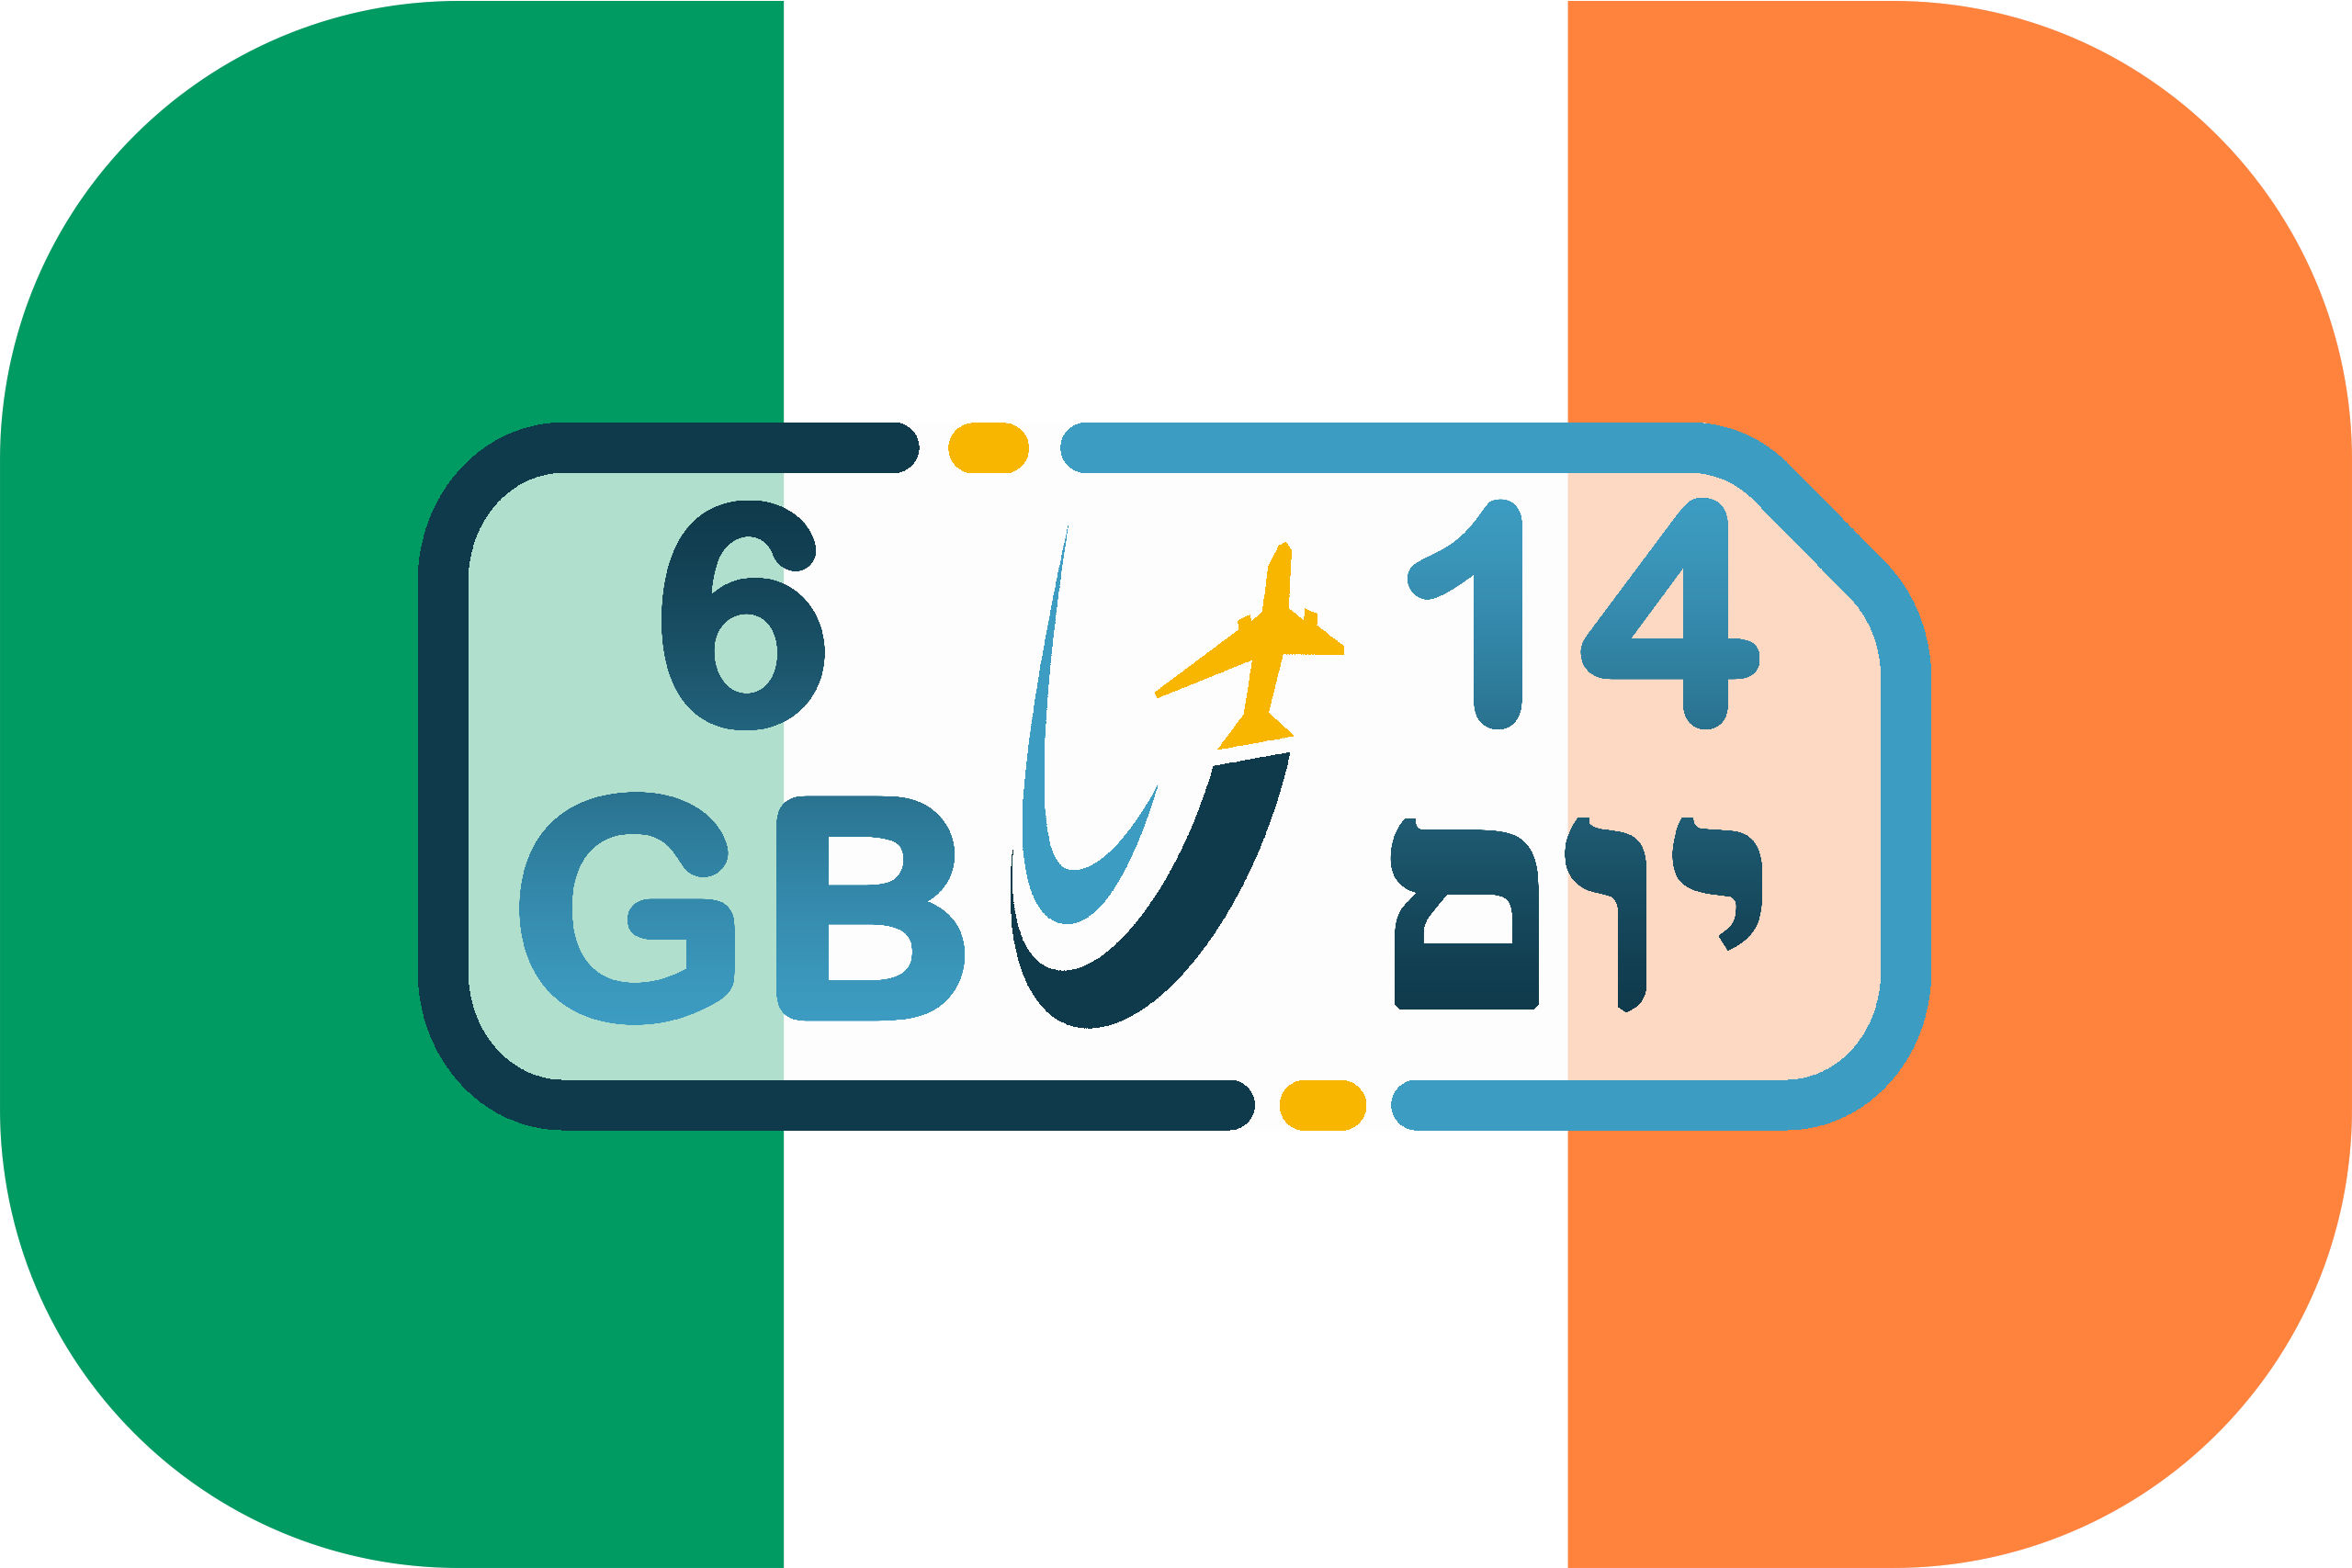 כרטיס סים באירלנד – גלישה 6GB (בתוקף ל- 14 יום)